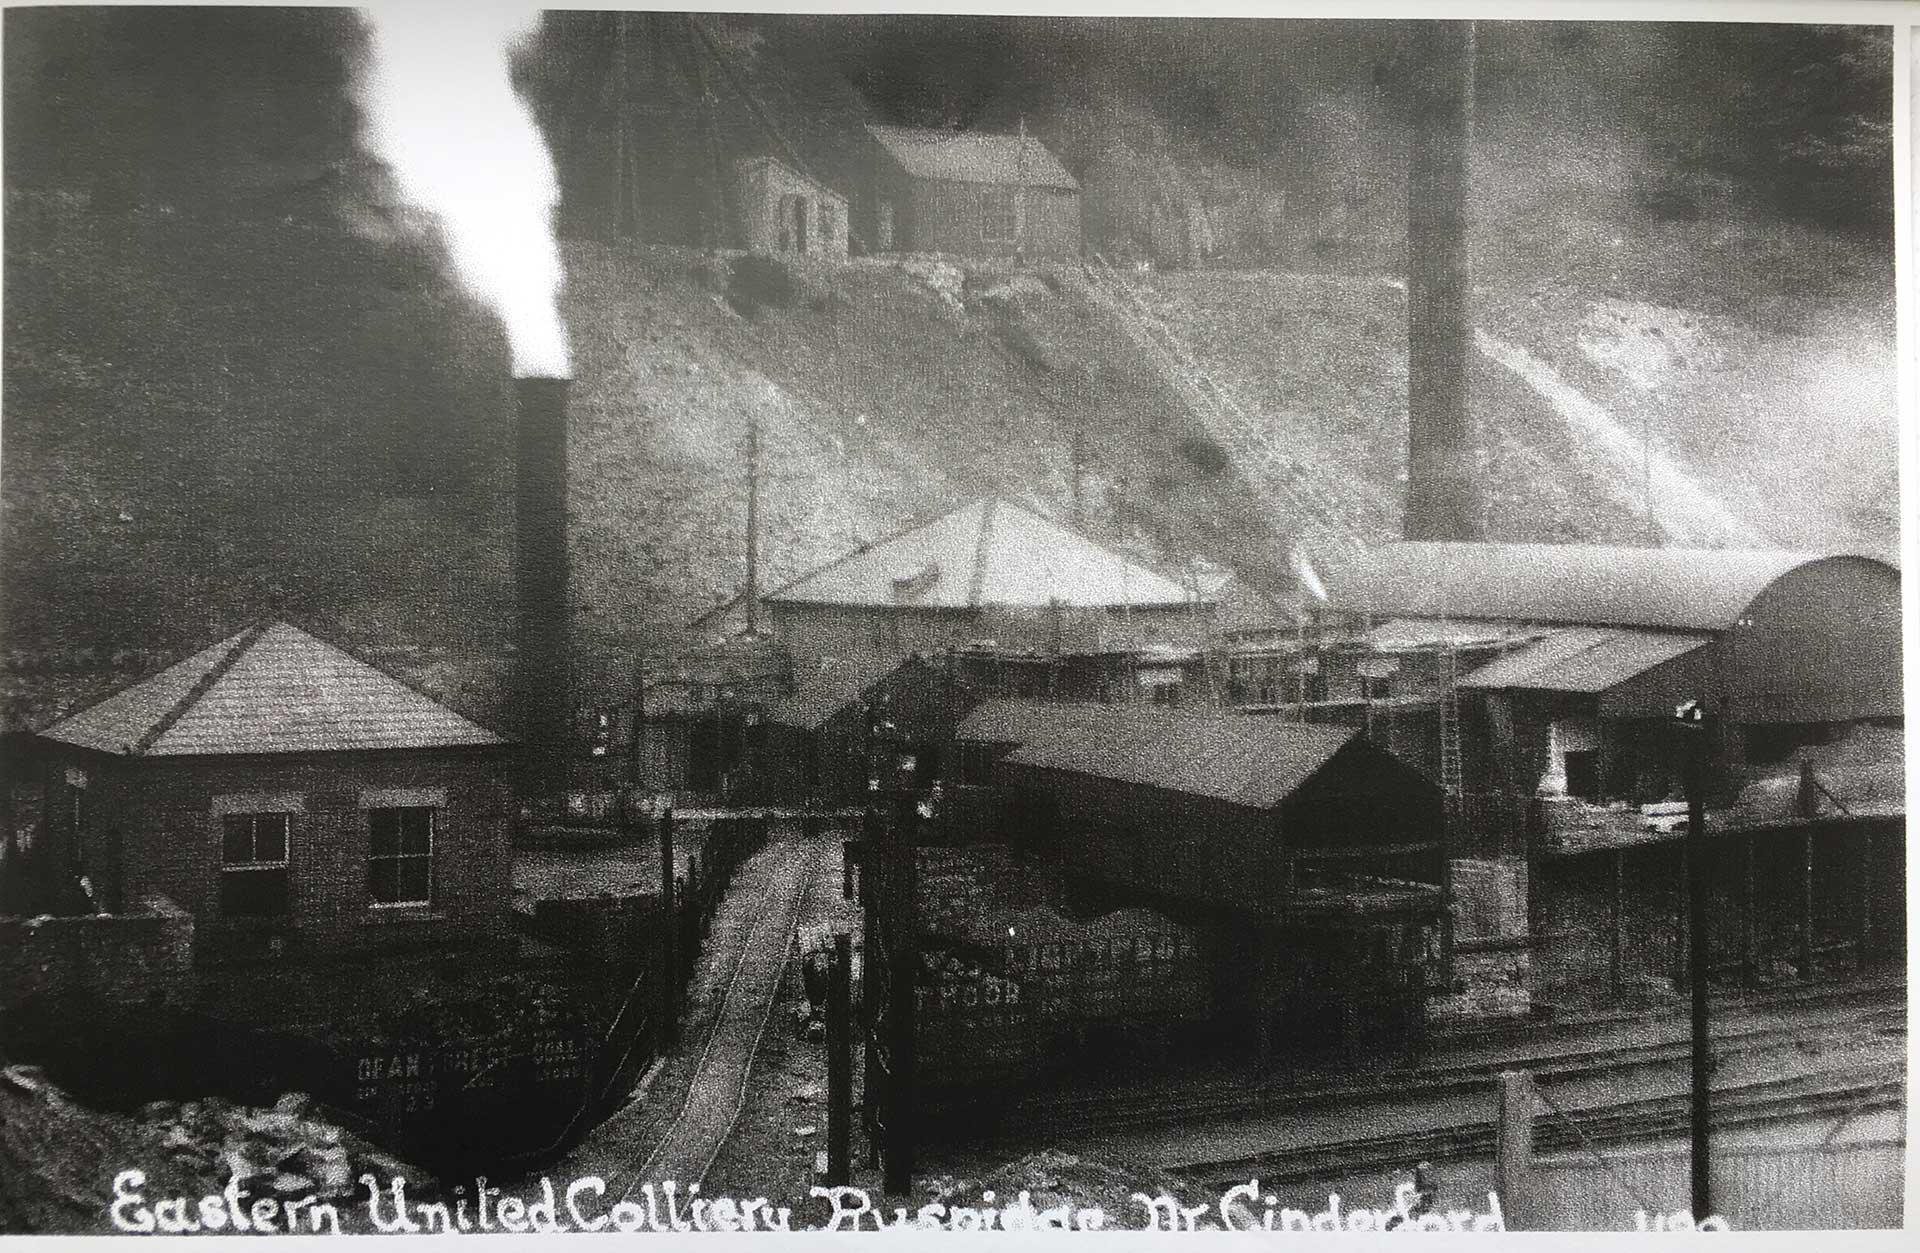 Eastern Utd Colliery